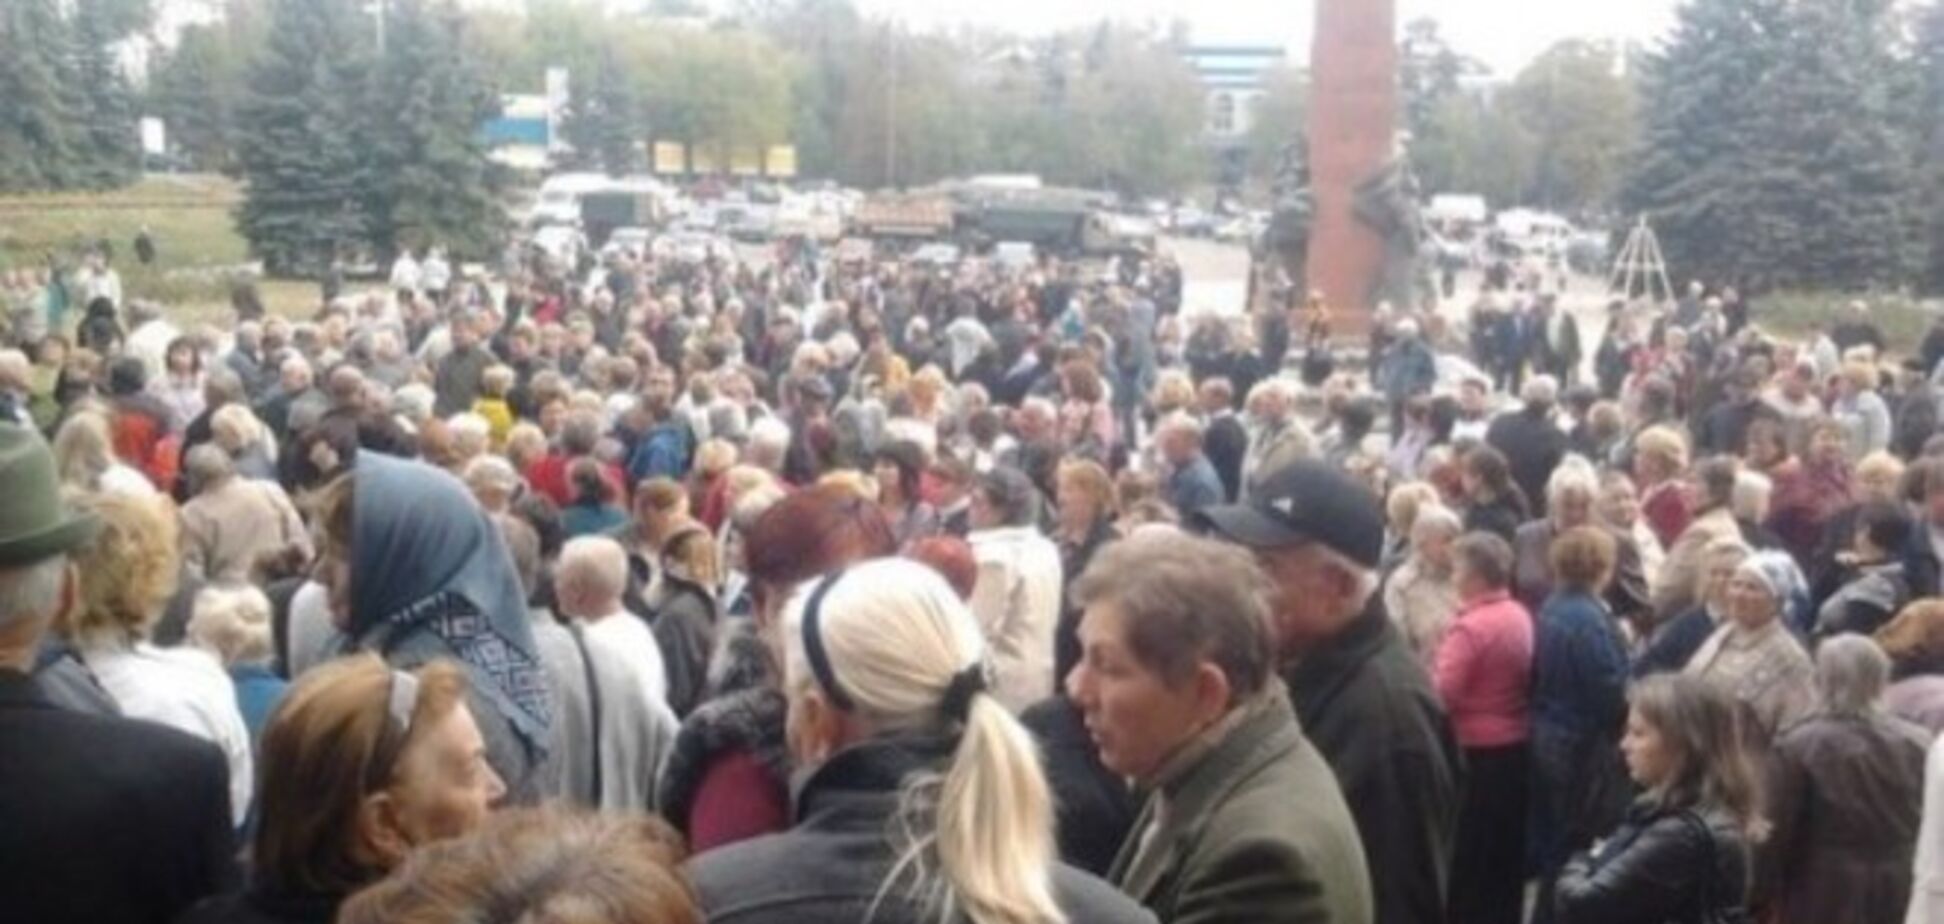 В Антраците казаки из РФ пригрозили жителям расстрелами за митинги и посоветовали забыть о выплатах